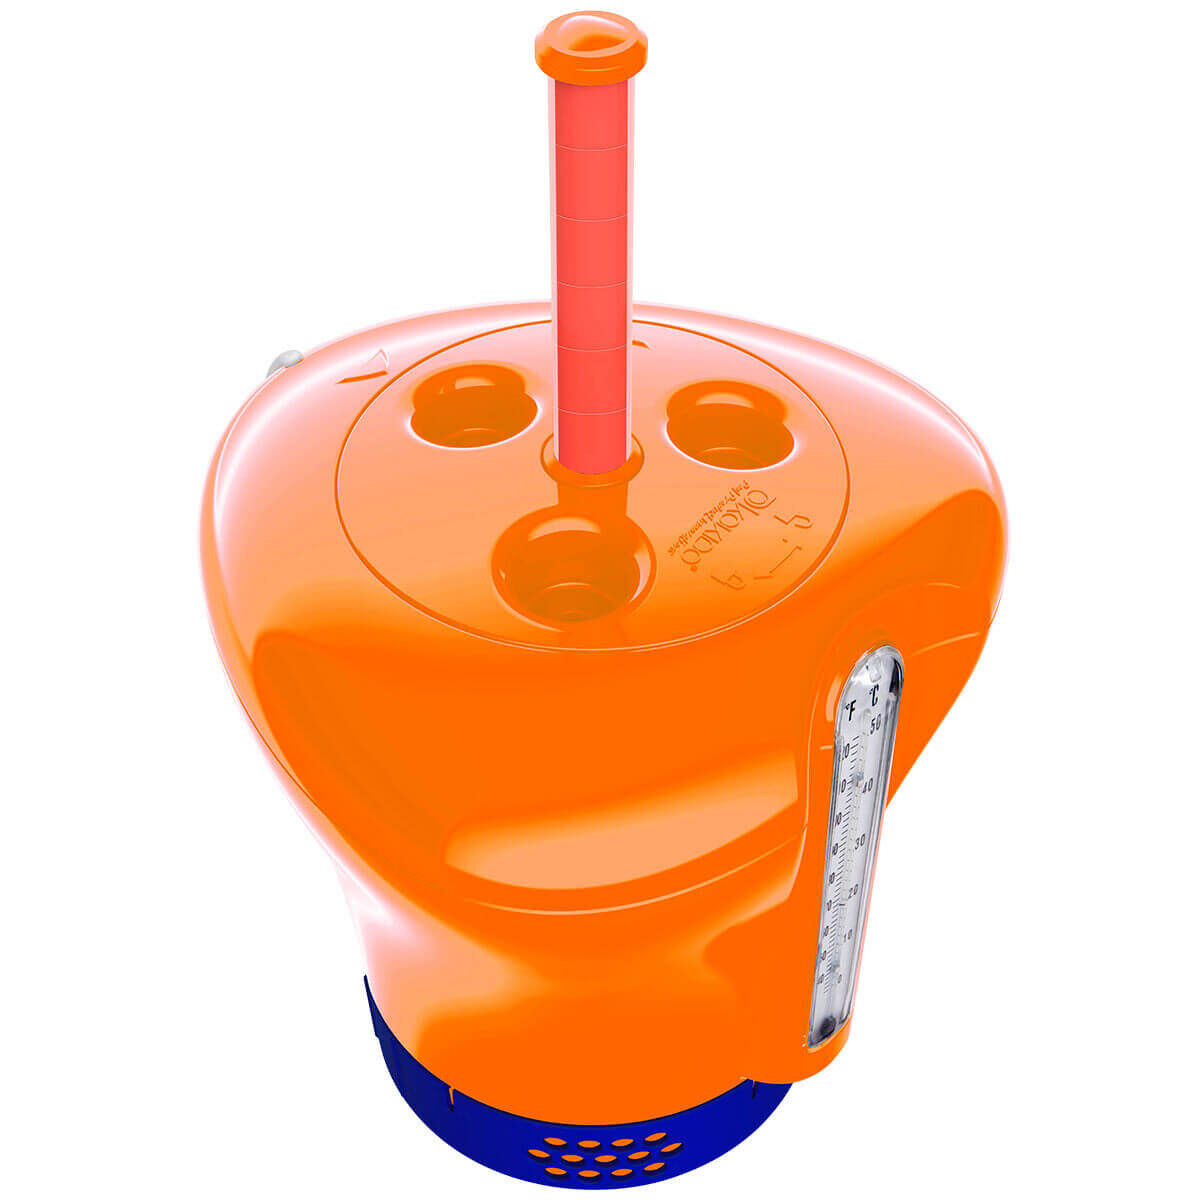 Поплавок-дозатор для химии в таблетках до 75 мм, с термометром и индикатором, оранжевый (Kokido CD16BU)